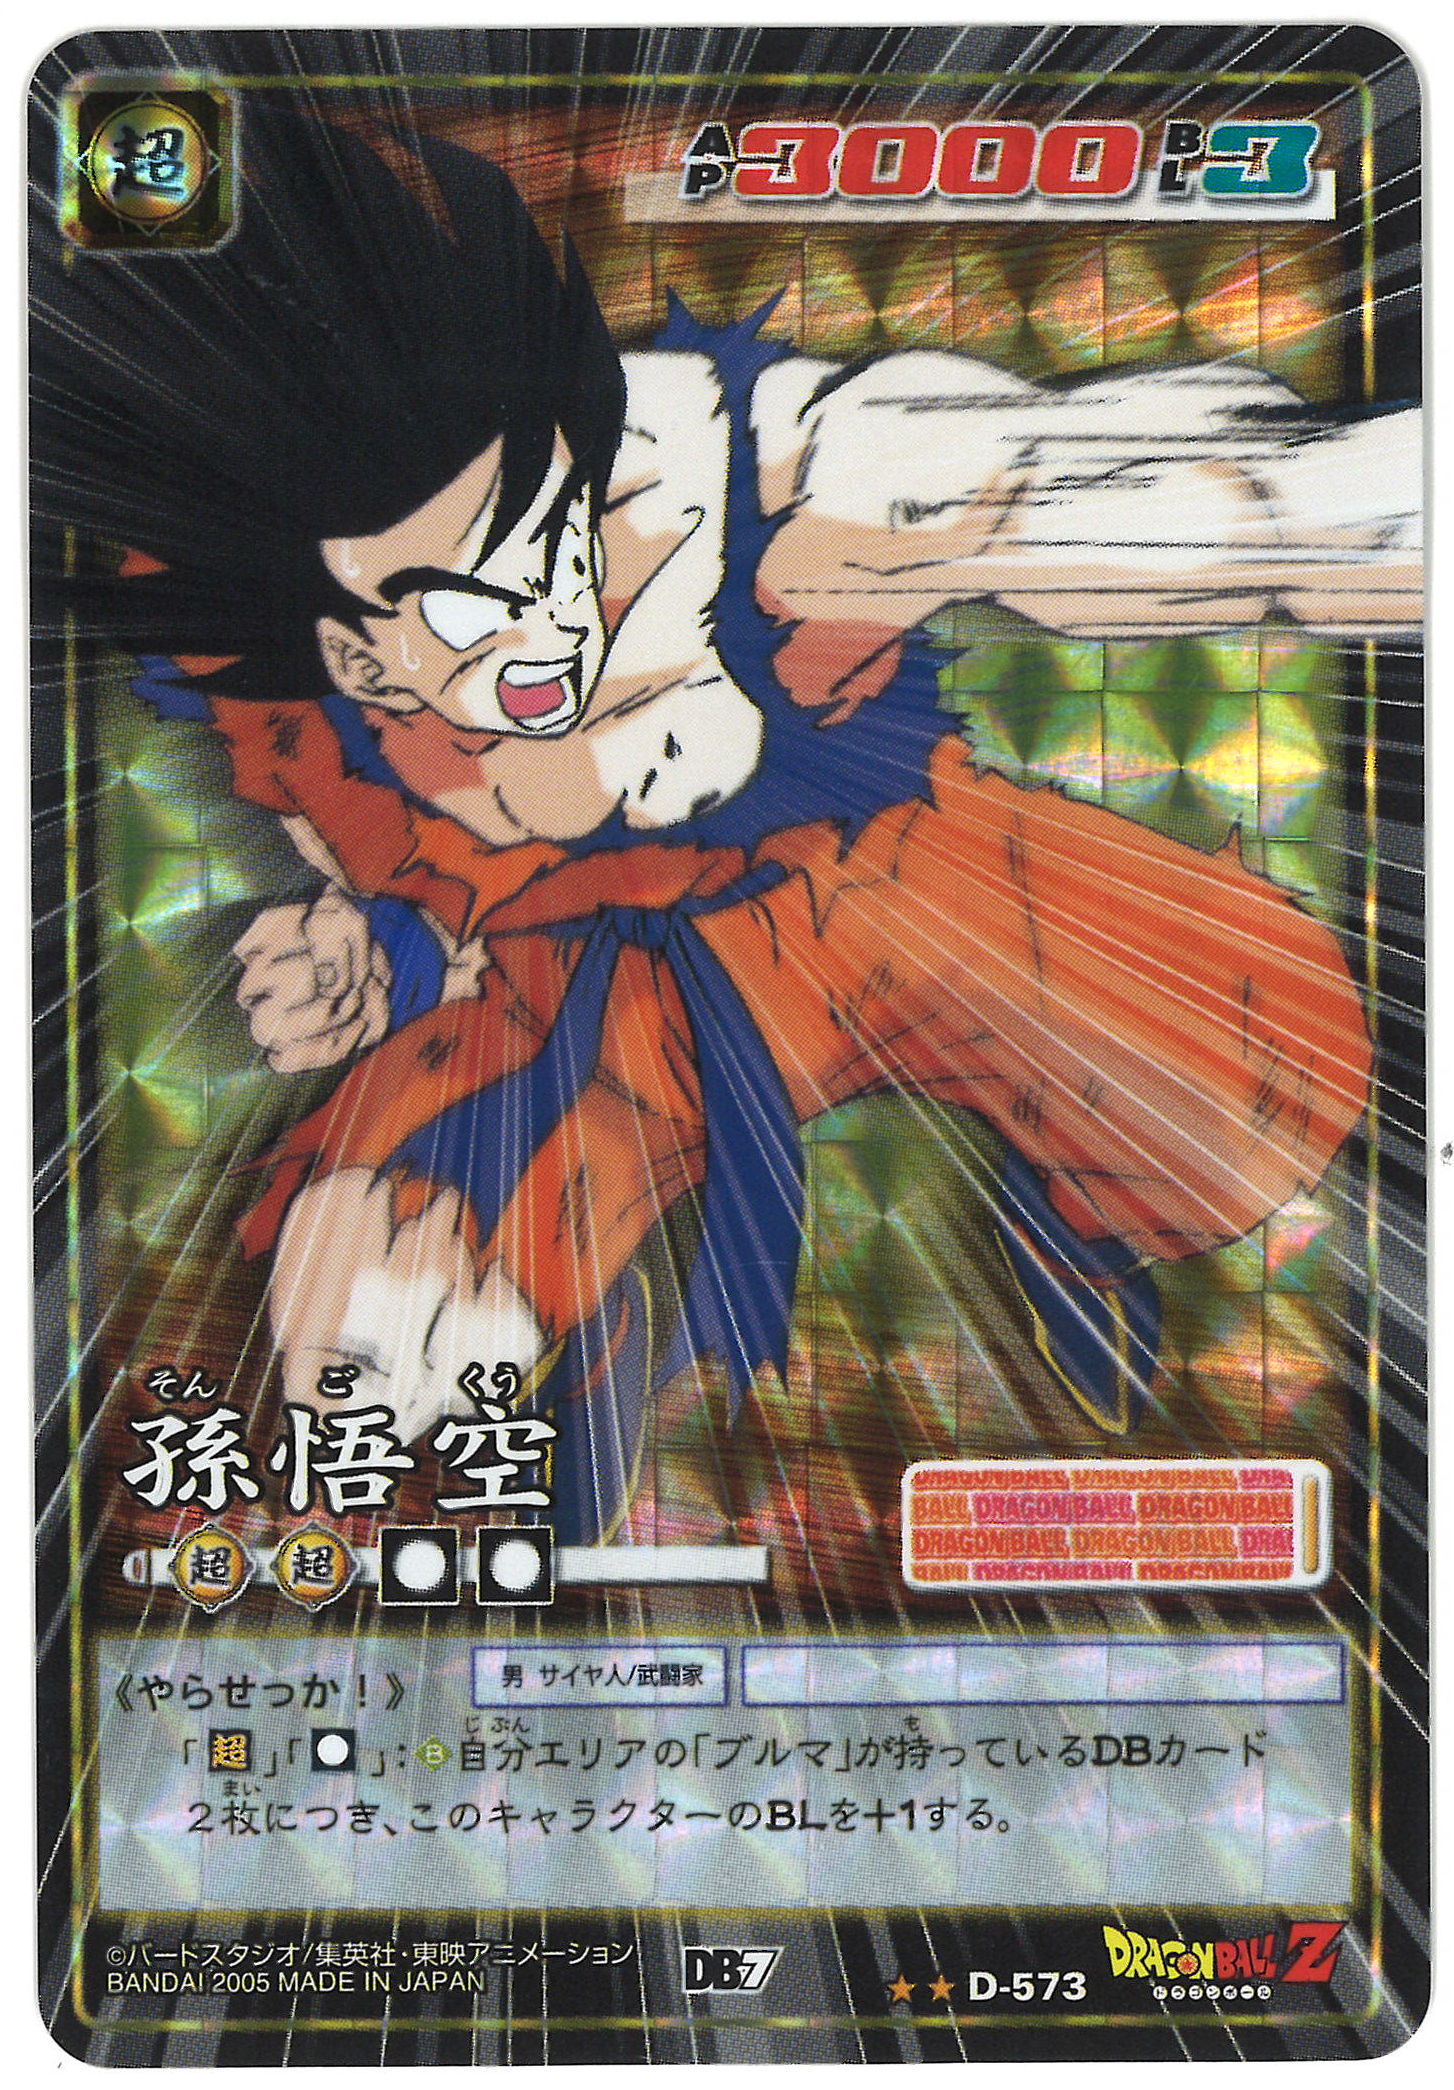 Dragon Ball Z DBZ Card Game Part 8 #Regular Set BANDAI 2005 MADE IN JAPAN